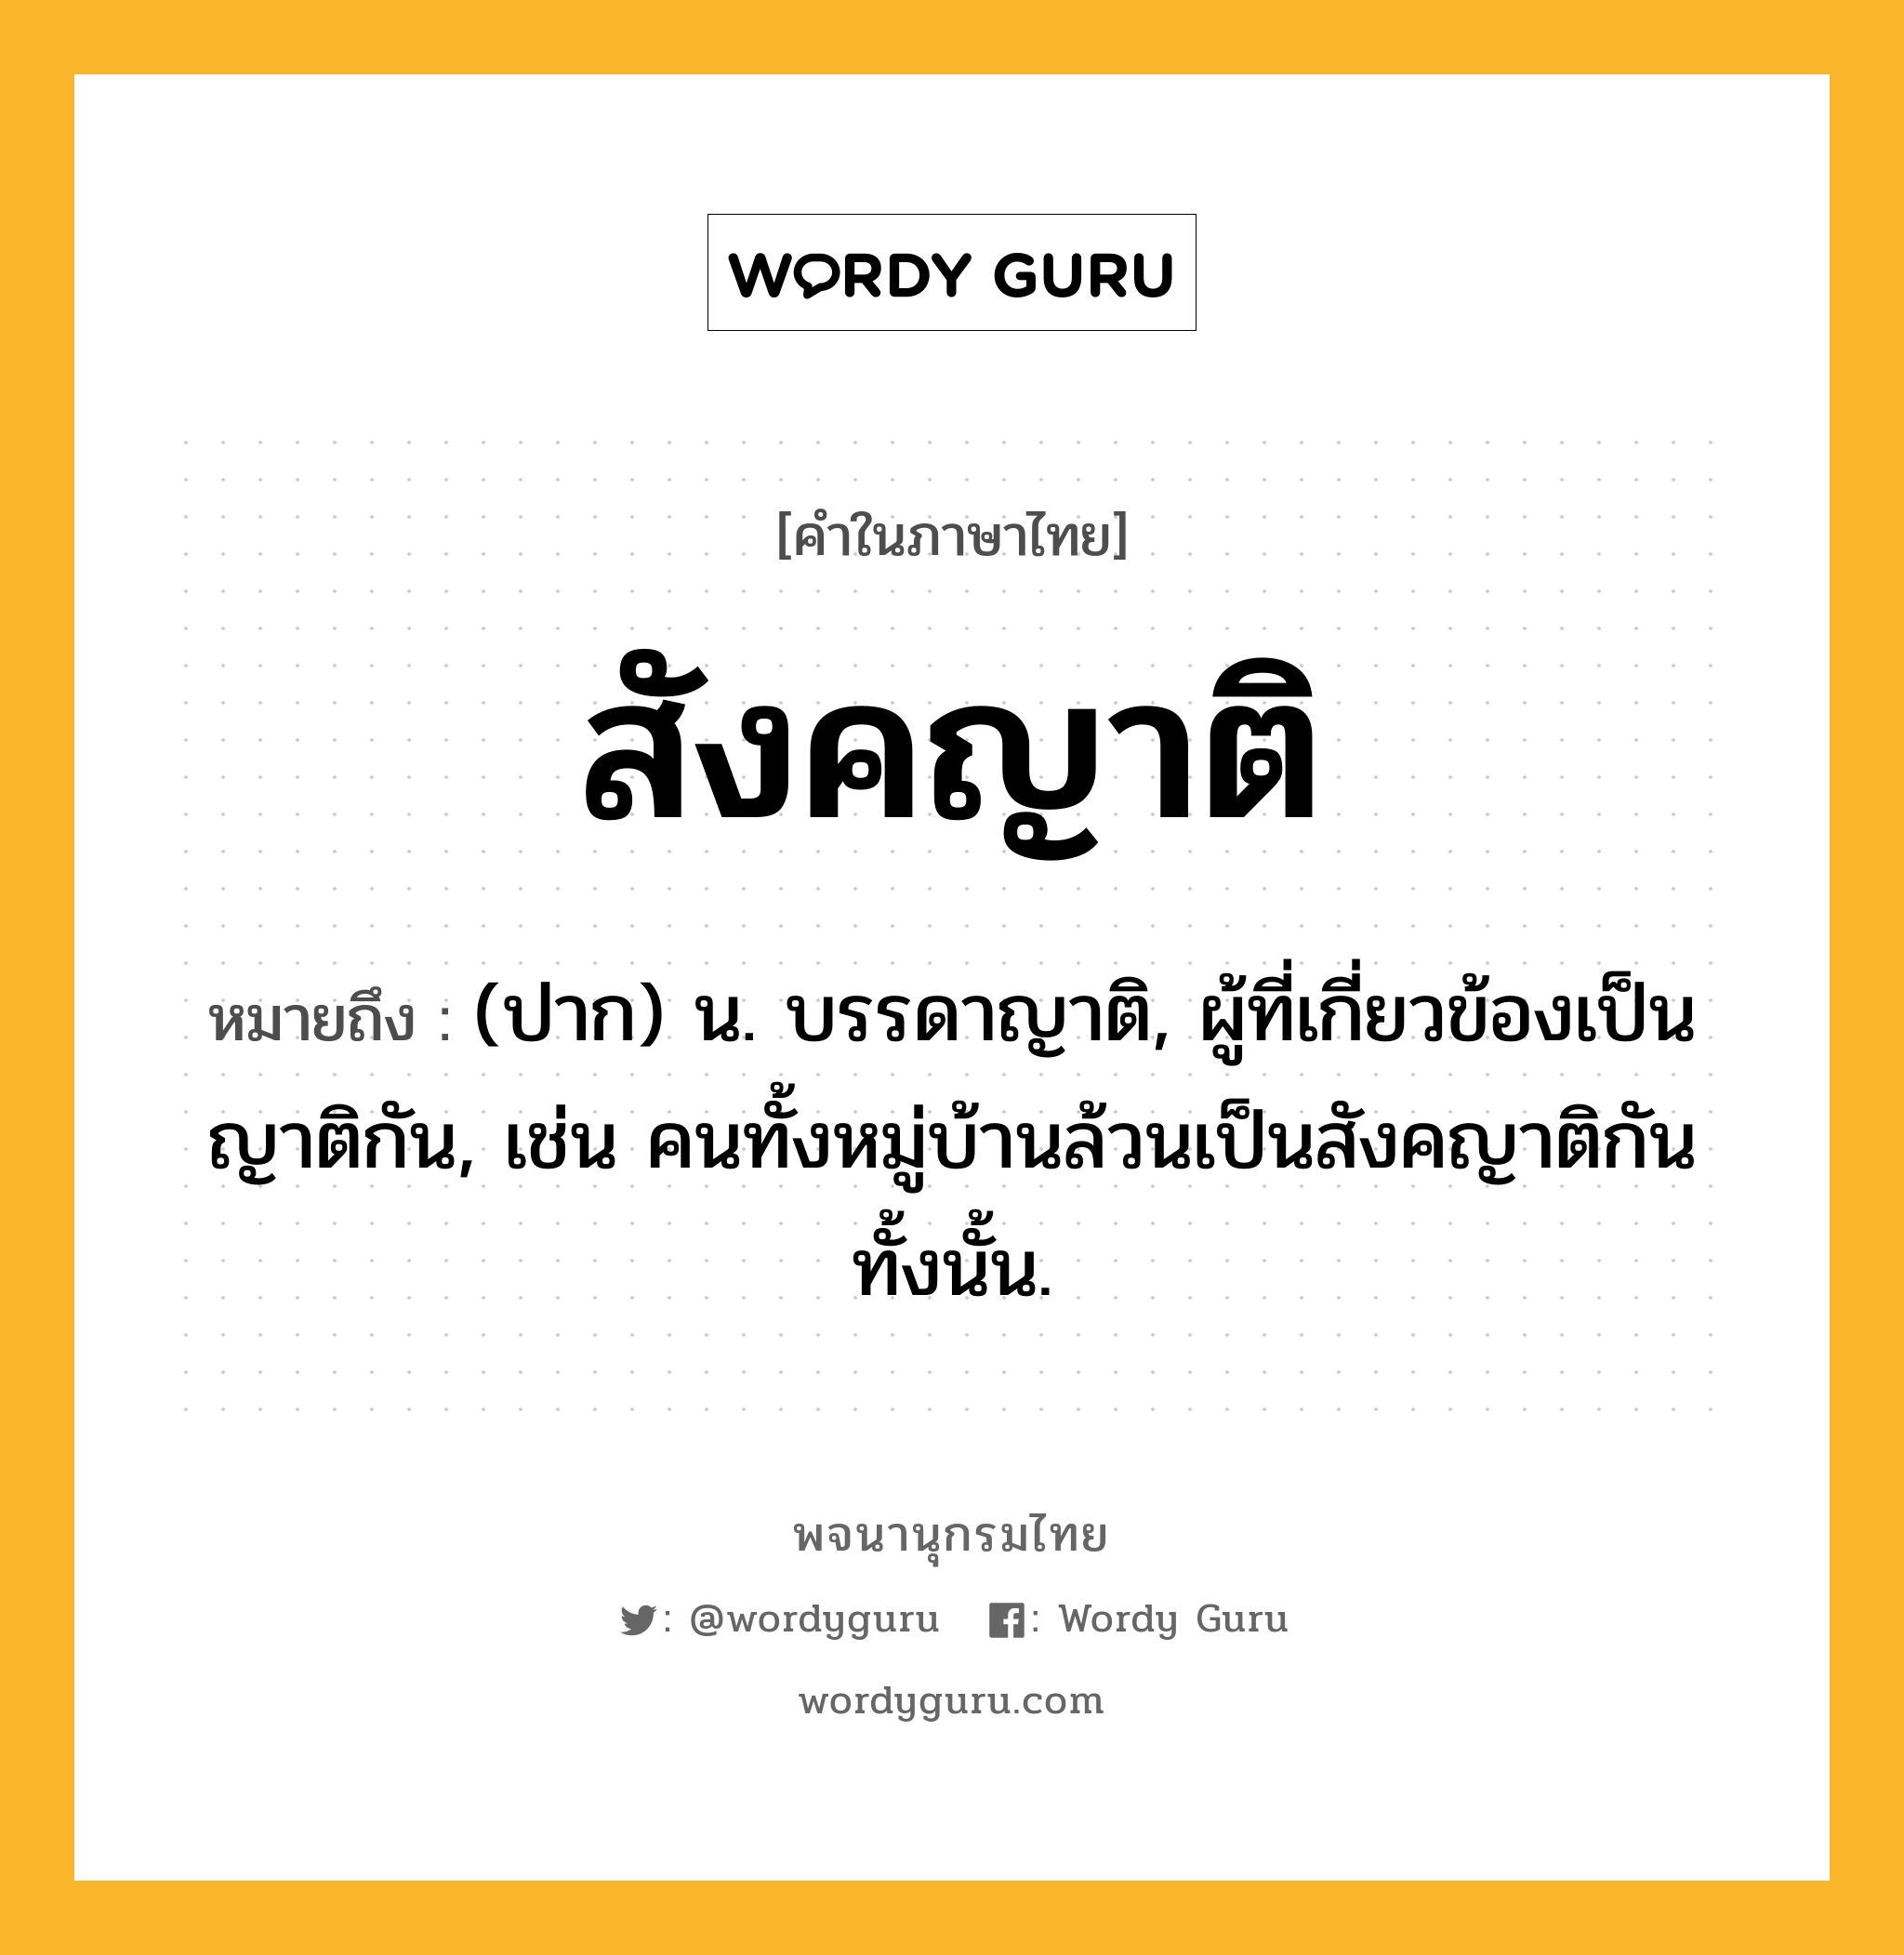 สังคญาติ ความหมาย หมายถึงอะไร?, คำในภาษาไทย สังคญาติ หมายถึง (ปาก) น. บรรดาญาติ, ผู้ที่เกี่ยวข้องเป็นญาติกัน, เช่น คนทั้งหมู่บ้านล้วนเป็นสังคญาติกันทั้งนั้น.